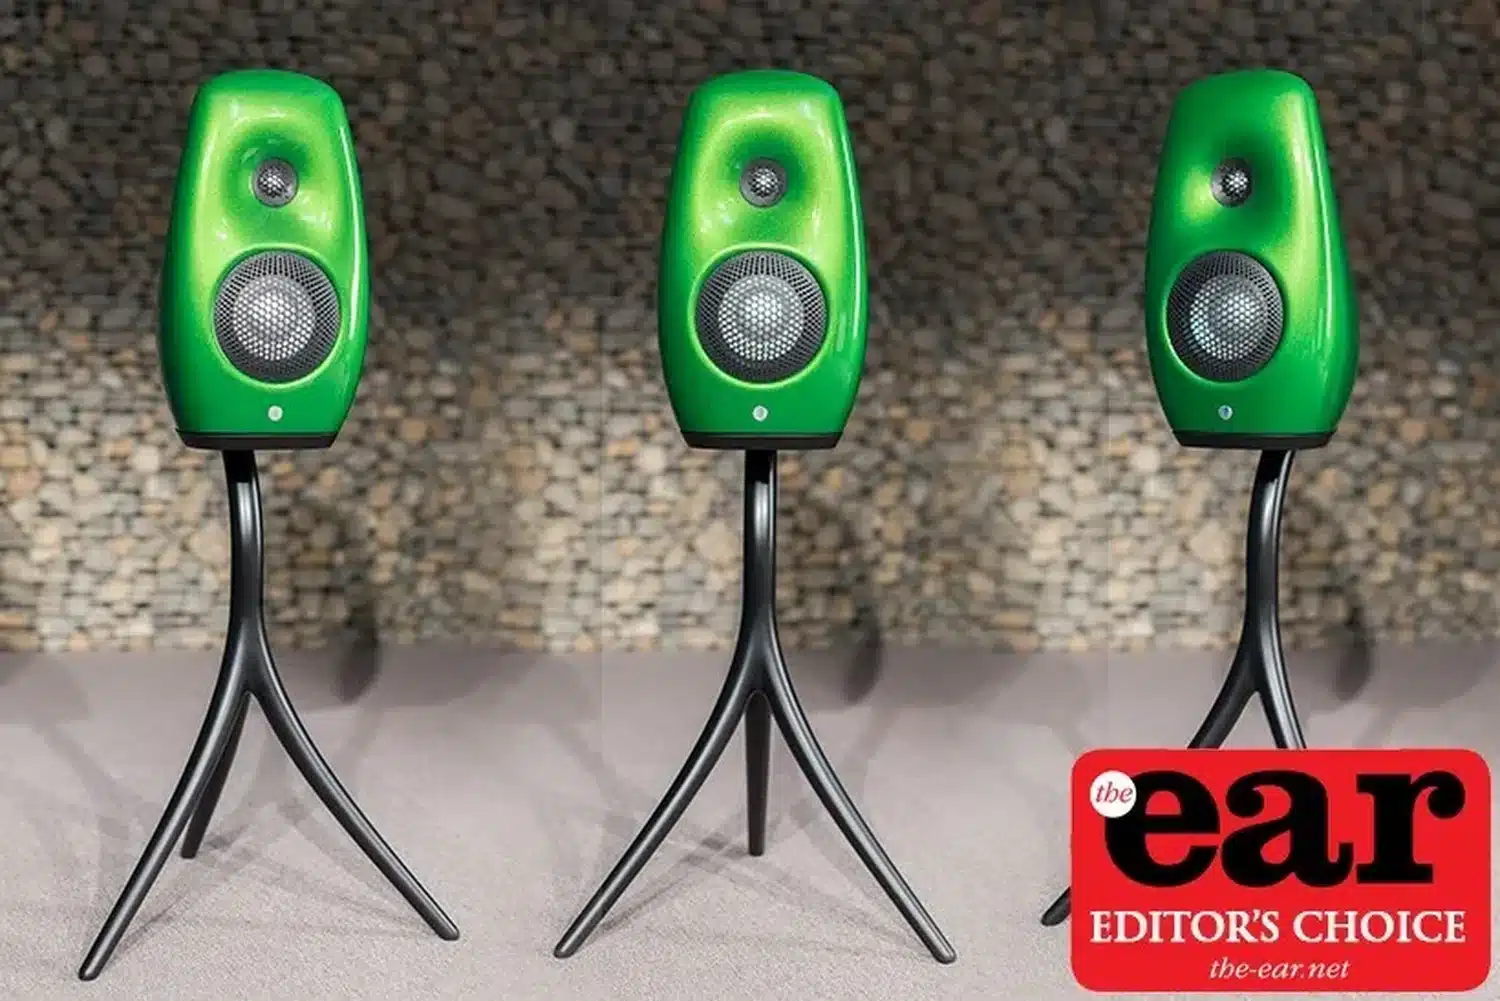 Trois enceintes vertes haut de gamme Vivid Audio Kaya S12 sur leur trépied spécifique se dressent avec des angles différents sur un fond gris en galets avec une étiquette « Editor's Choice » de The Ear (par 1877.audio)